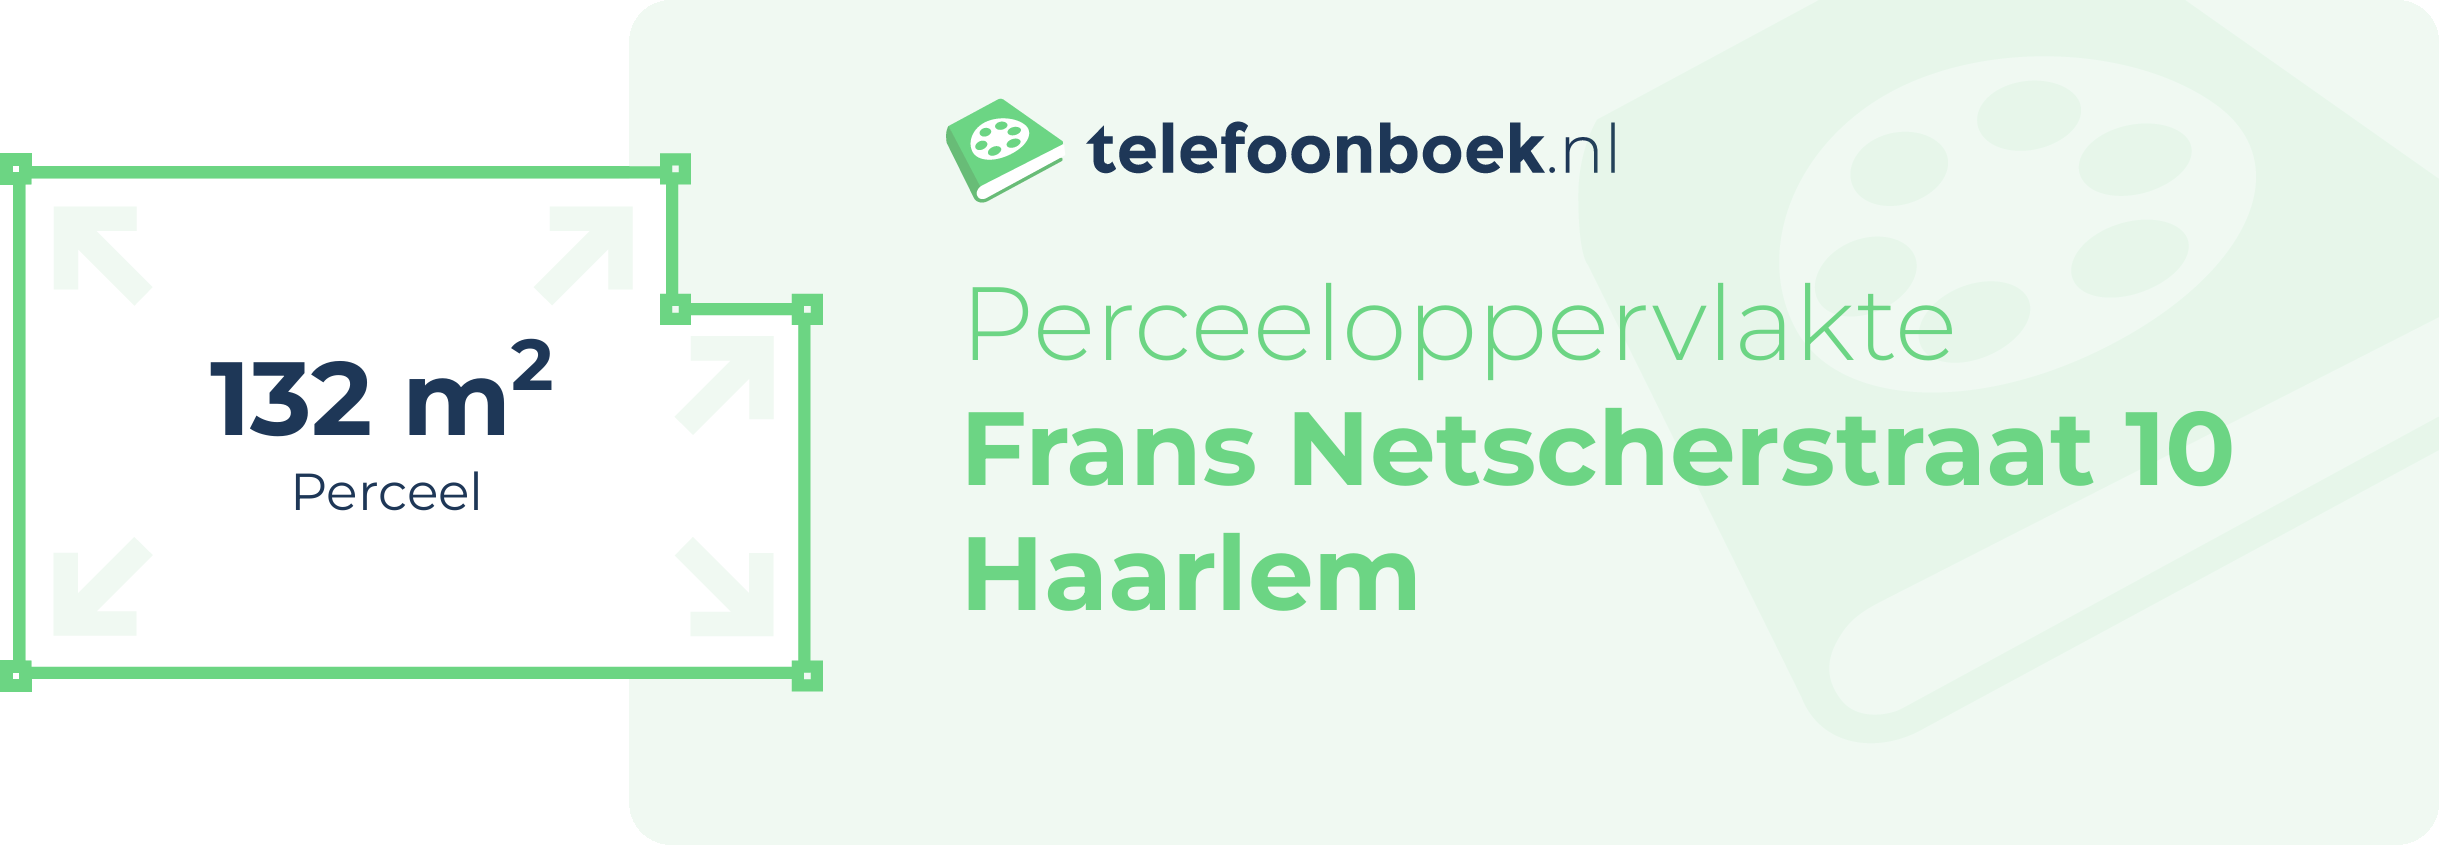 Perceeloppervlakte Frans Netscherstraat 10 Haarlem